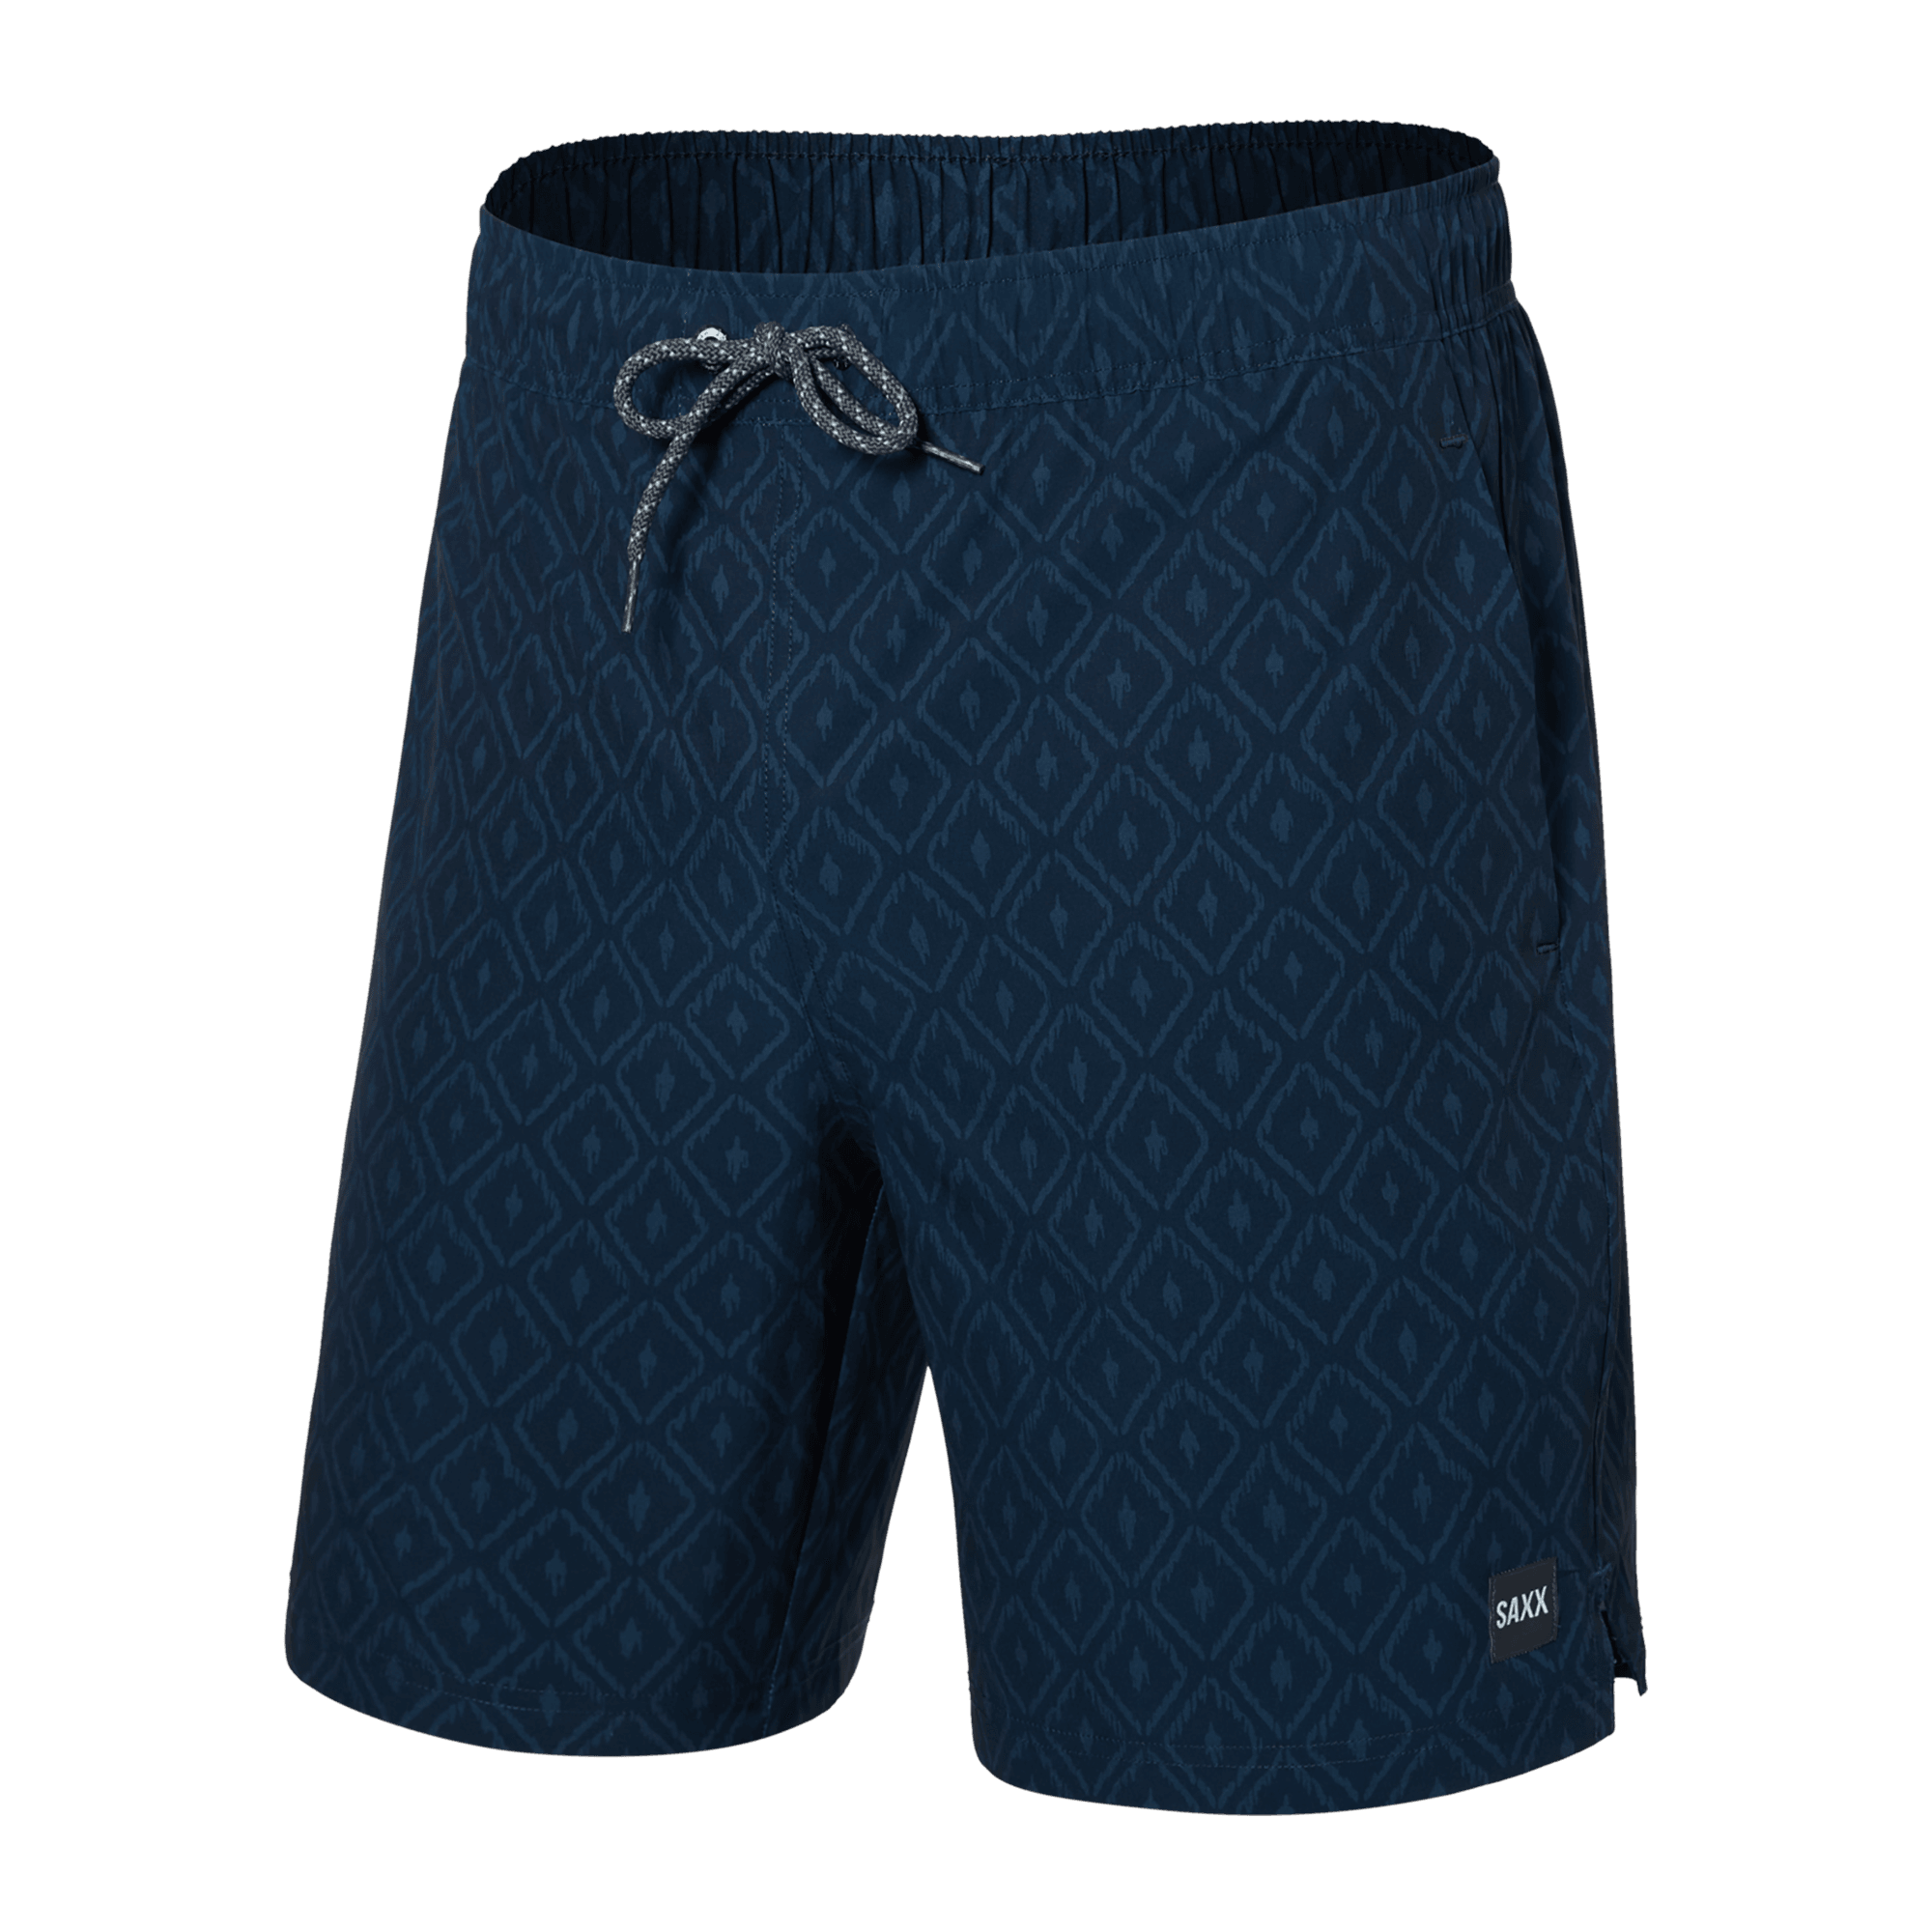 Multi-Sport 2N1 Short - Men's Sportwear – SAXX Underwear